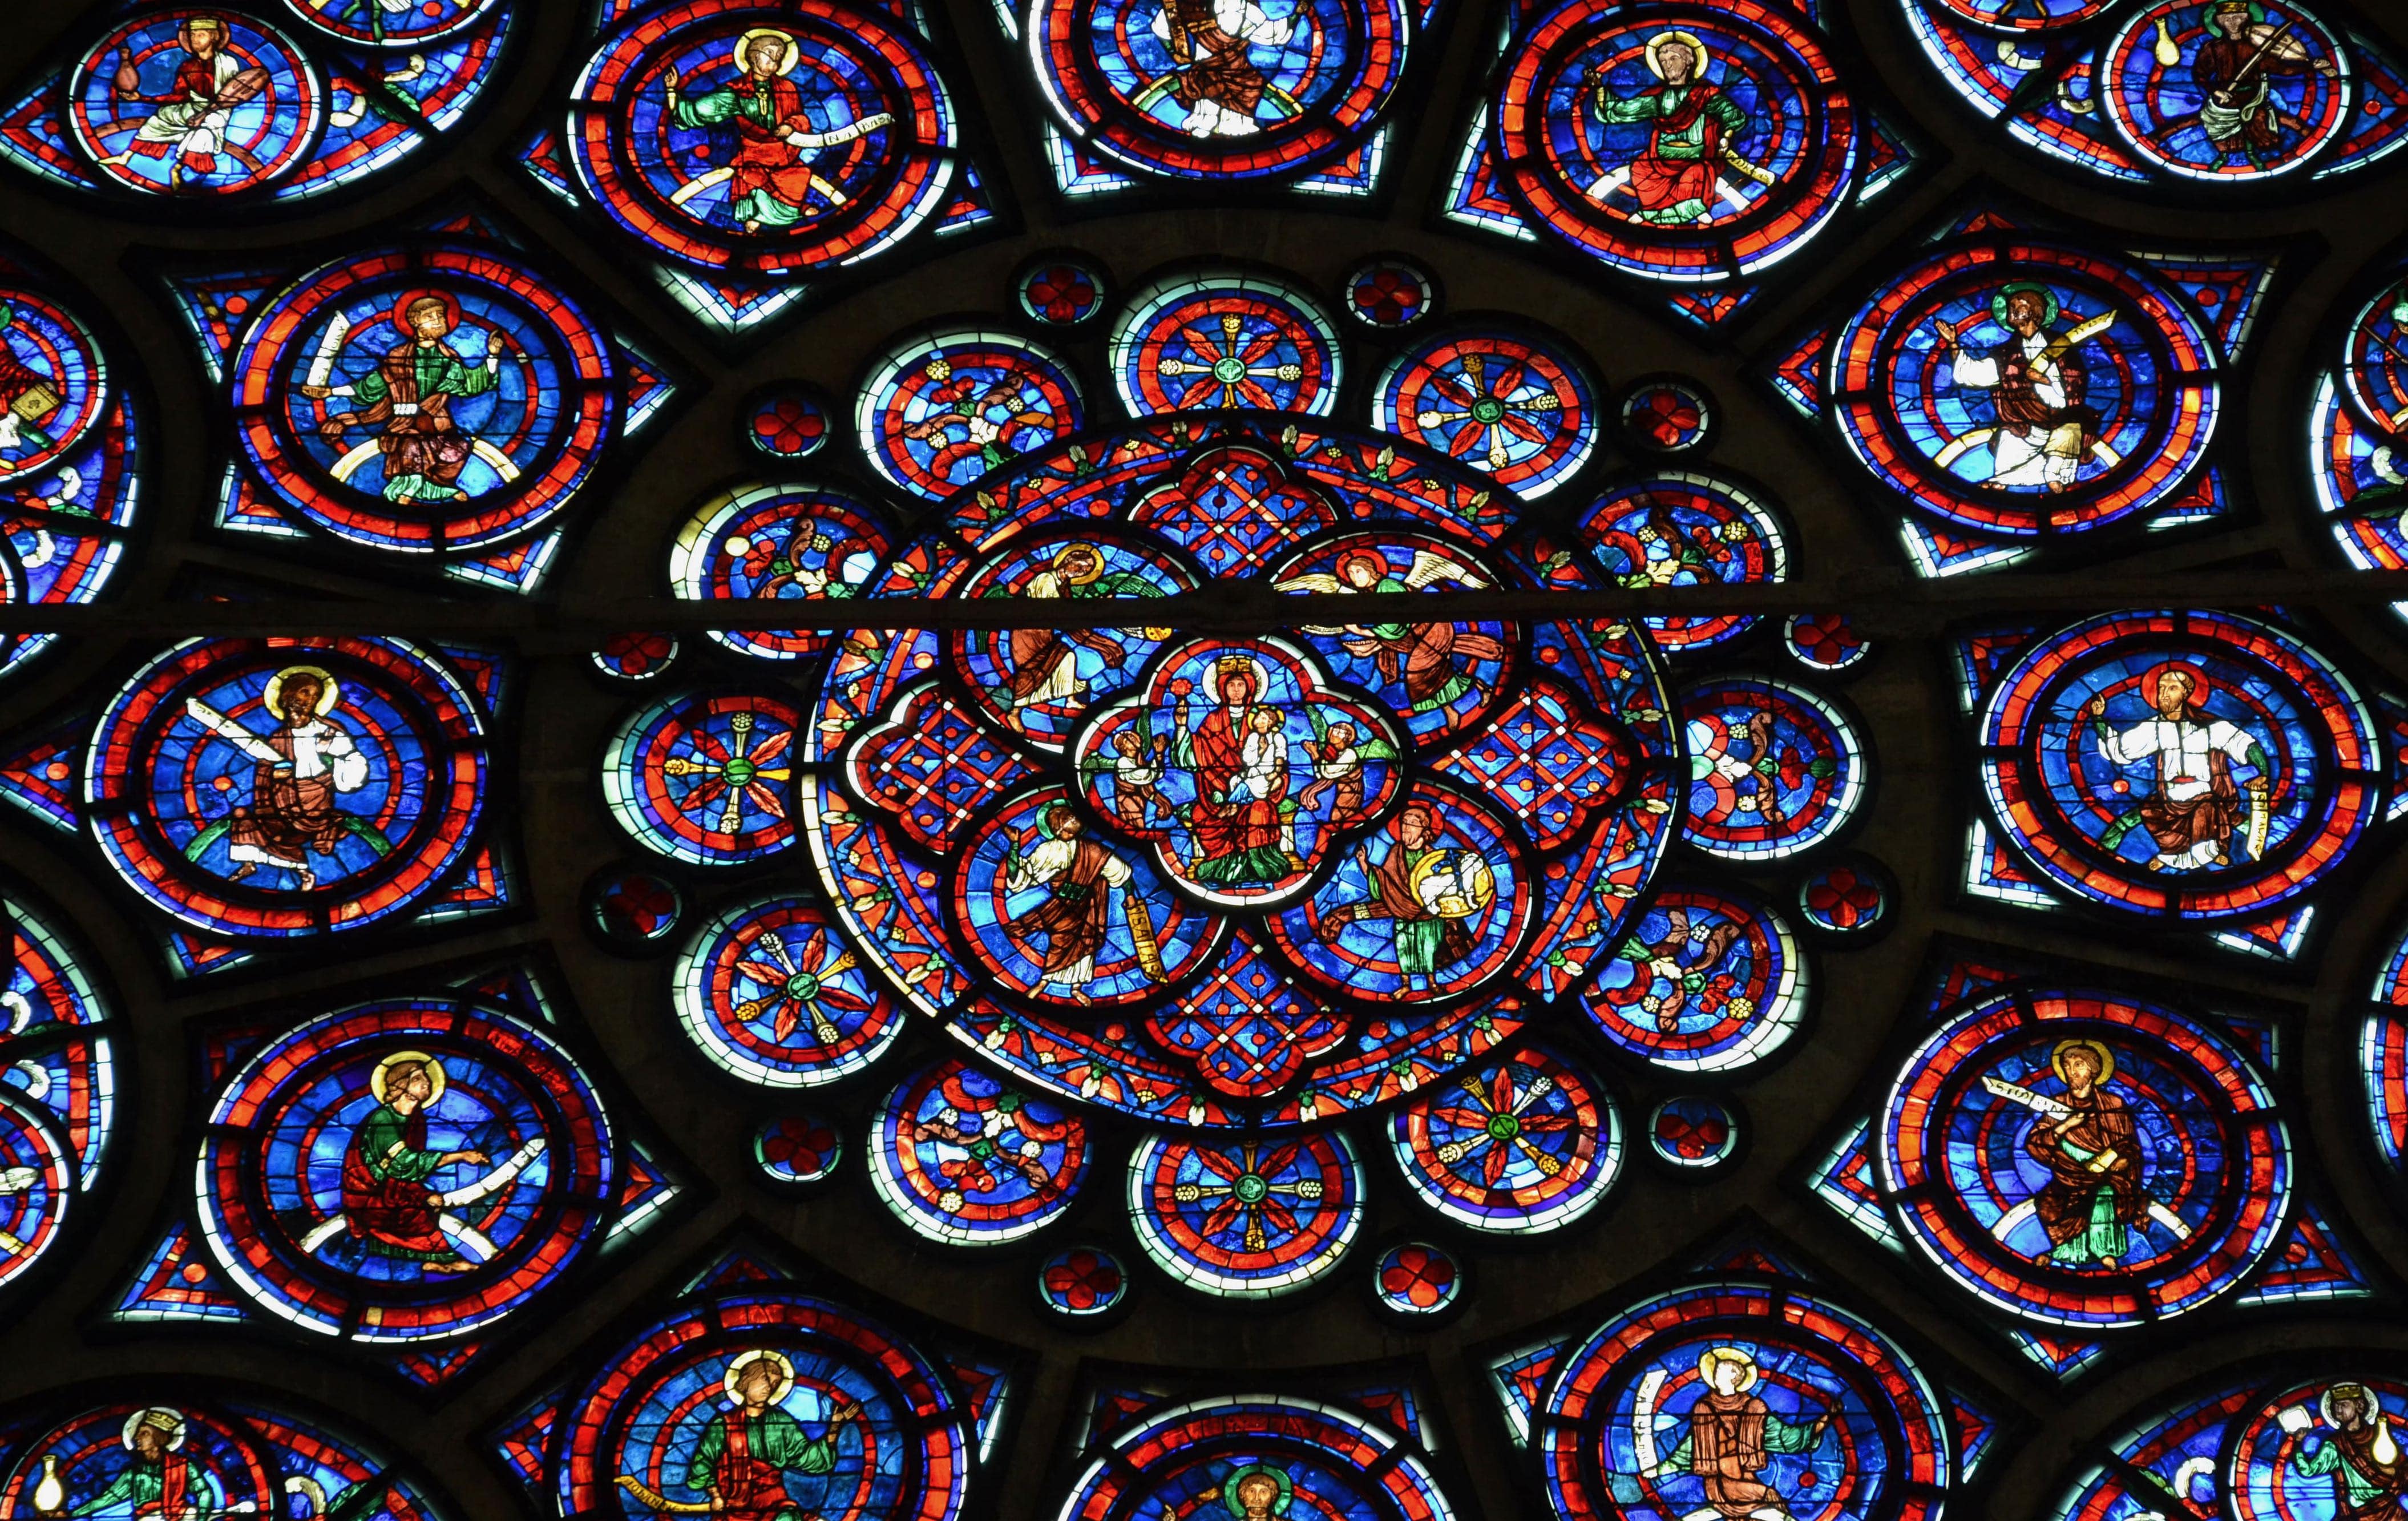 Rosace, Cathédrale Notre-Dame de Laon